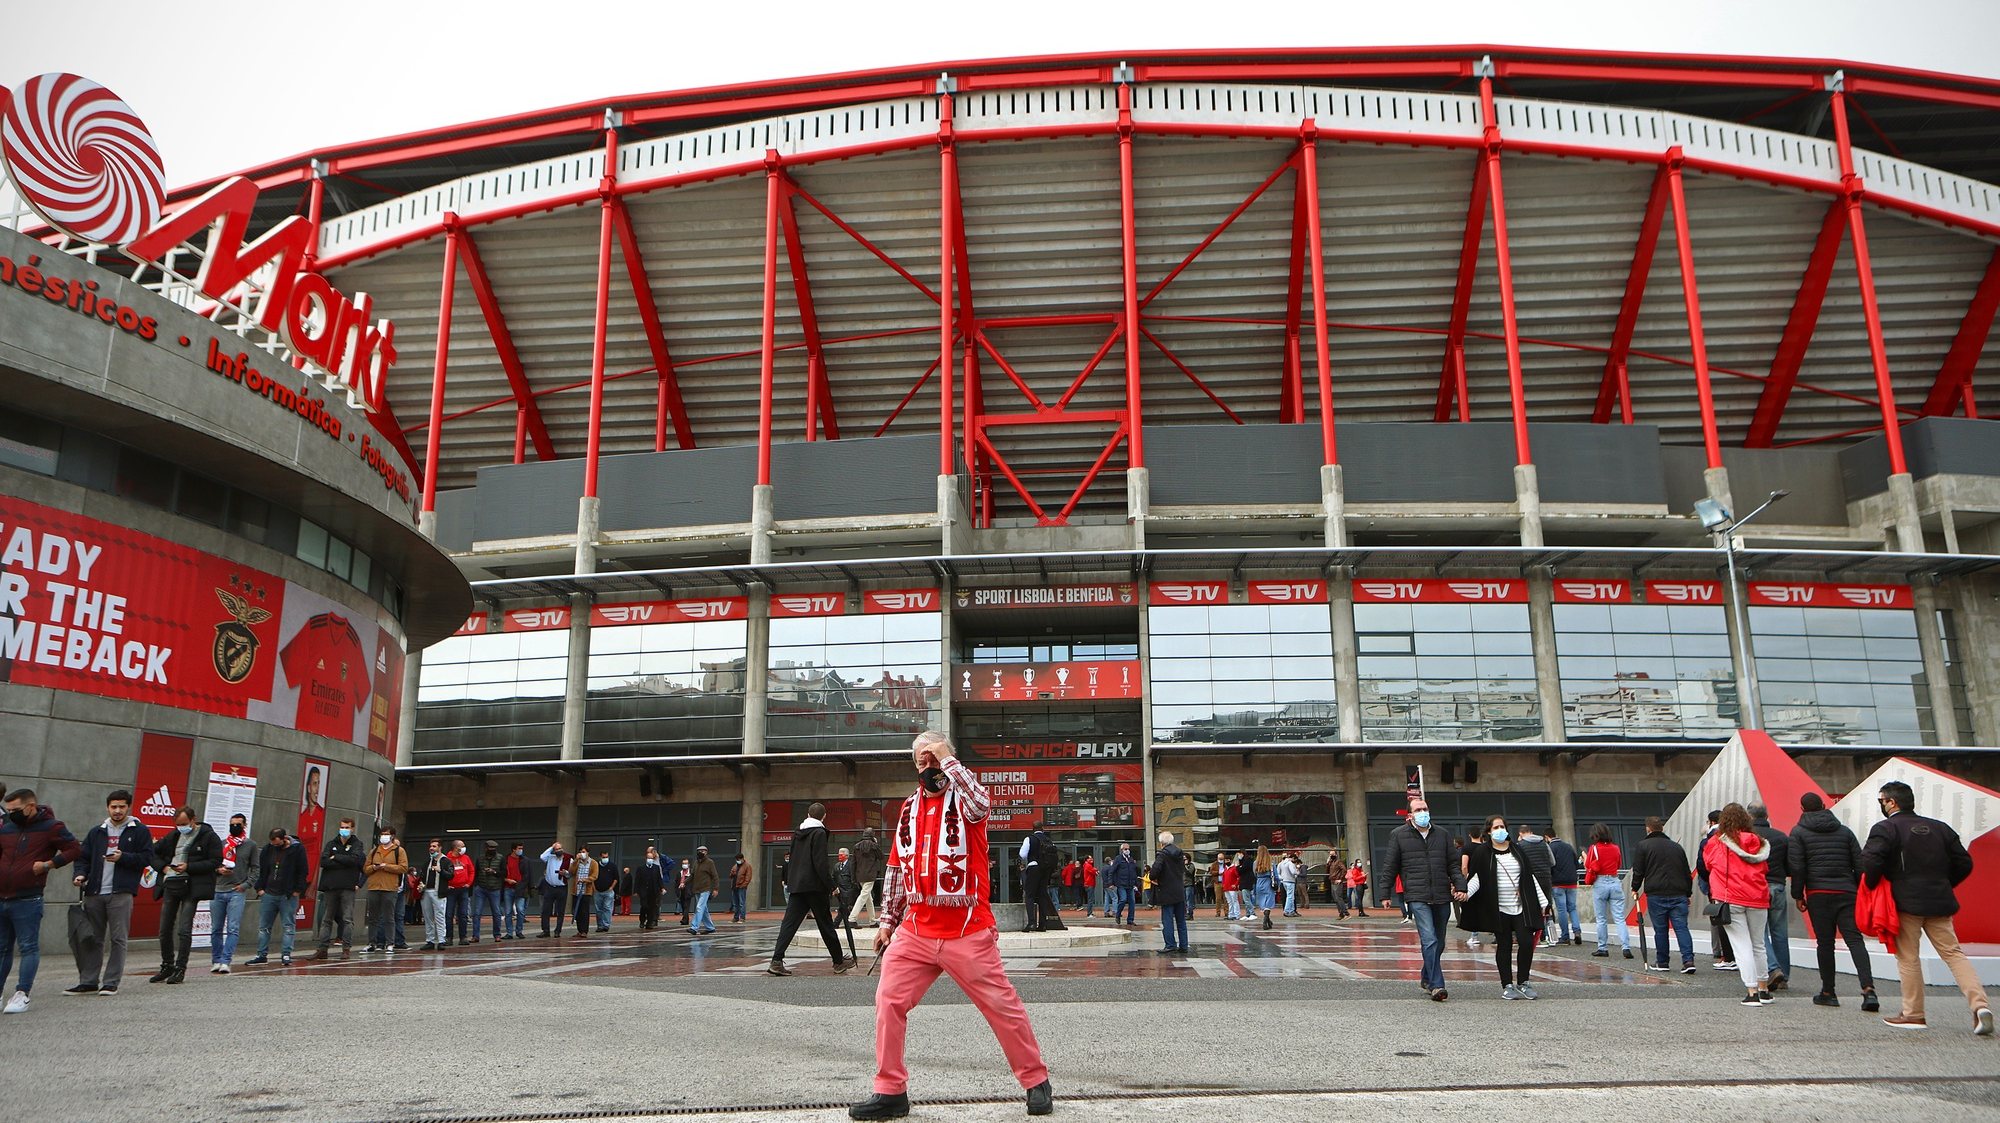 Sócios do Sport Lisboa e Benfica aguardam em fila a sua vez para exercerem o seu direito de voto para as eleições do clube, no Estádio da Luz, em Lisboa, 28 de outubro de 2020. ANTÓNIO PEDRO SANTOS/LUSA